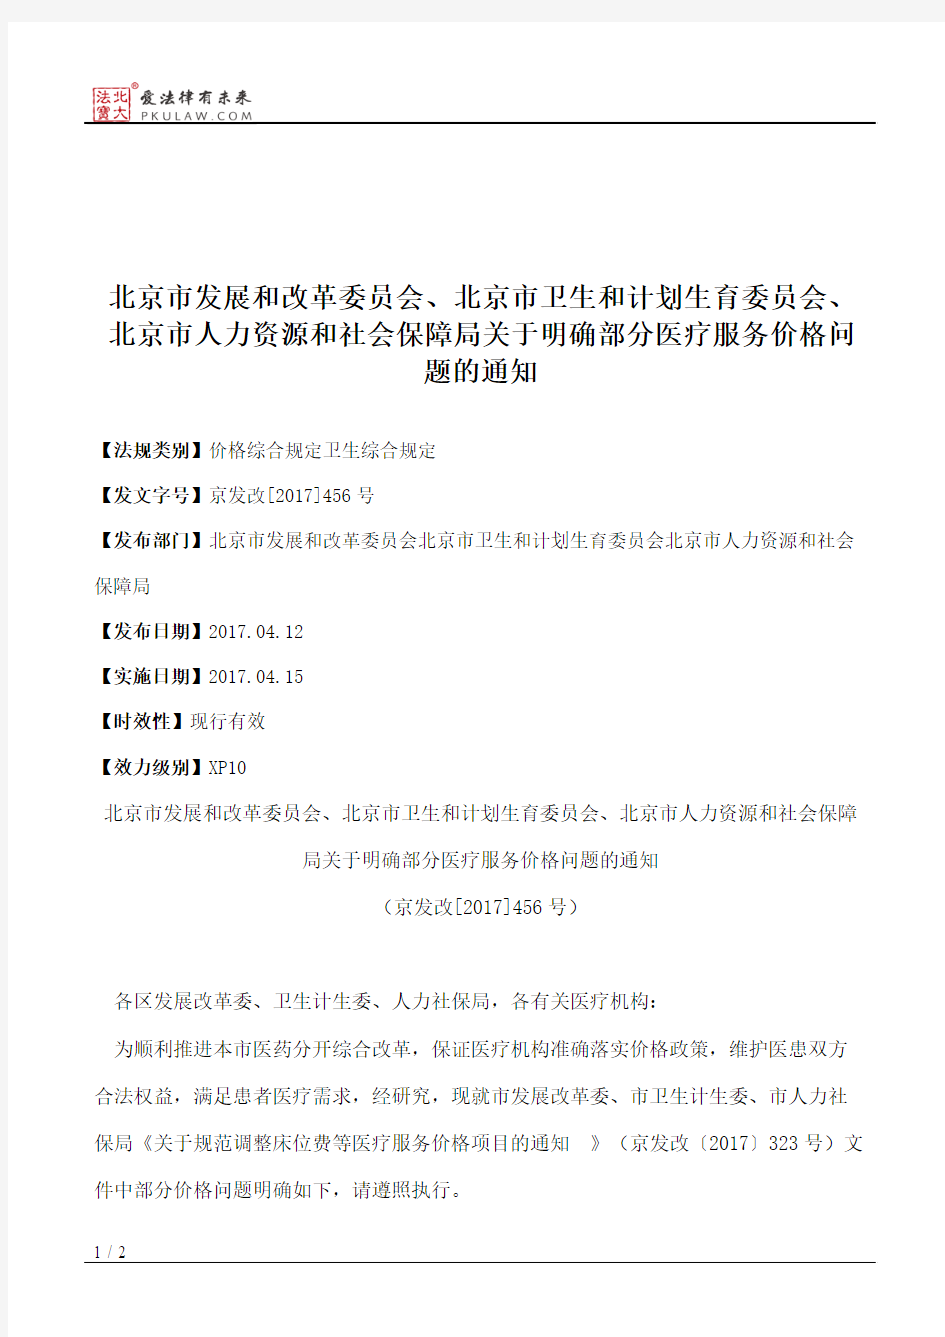 北京市发展和改革委员会、北京市卫生和计划生育委员会、北京市人